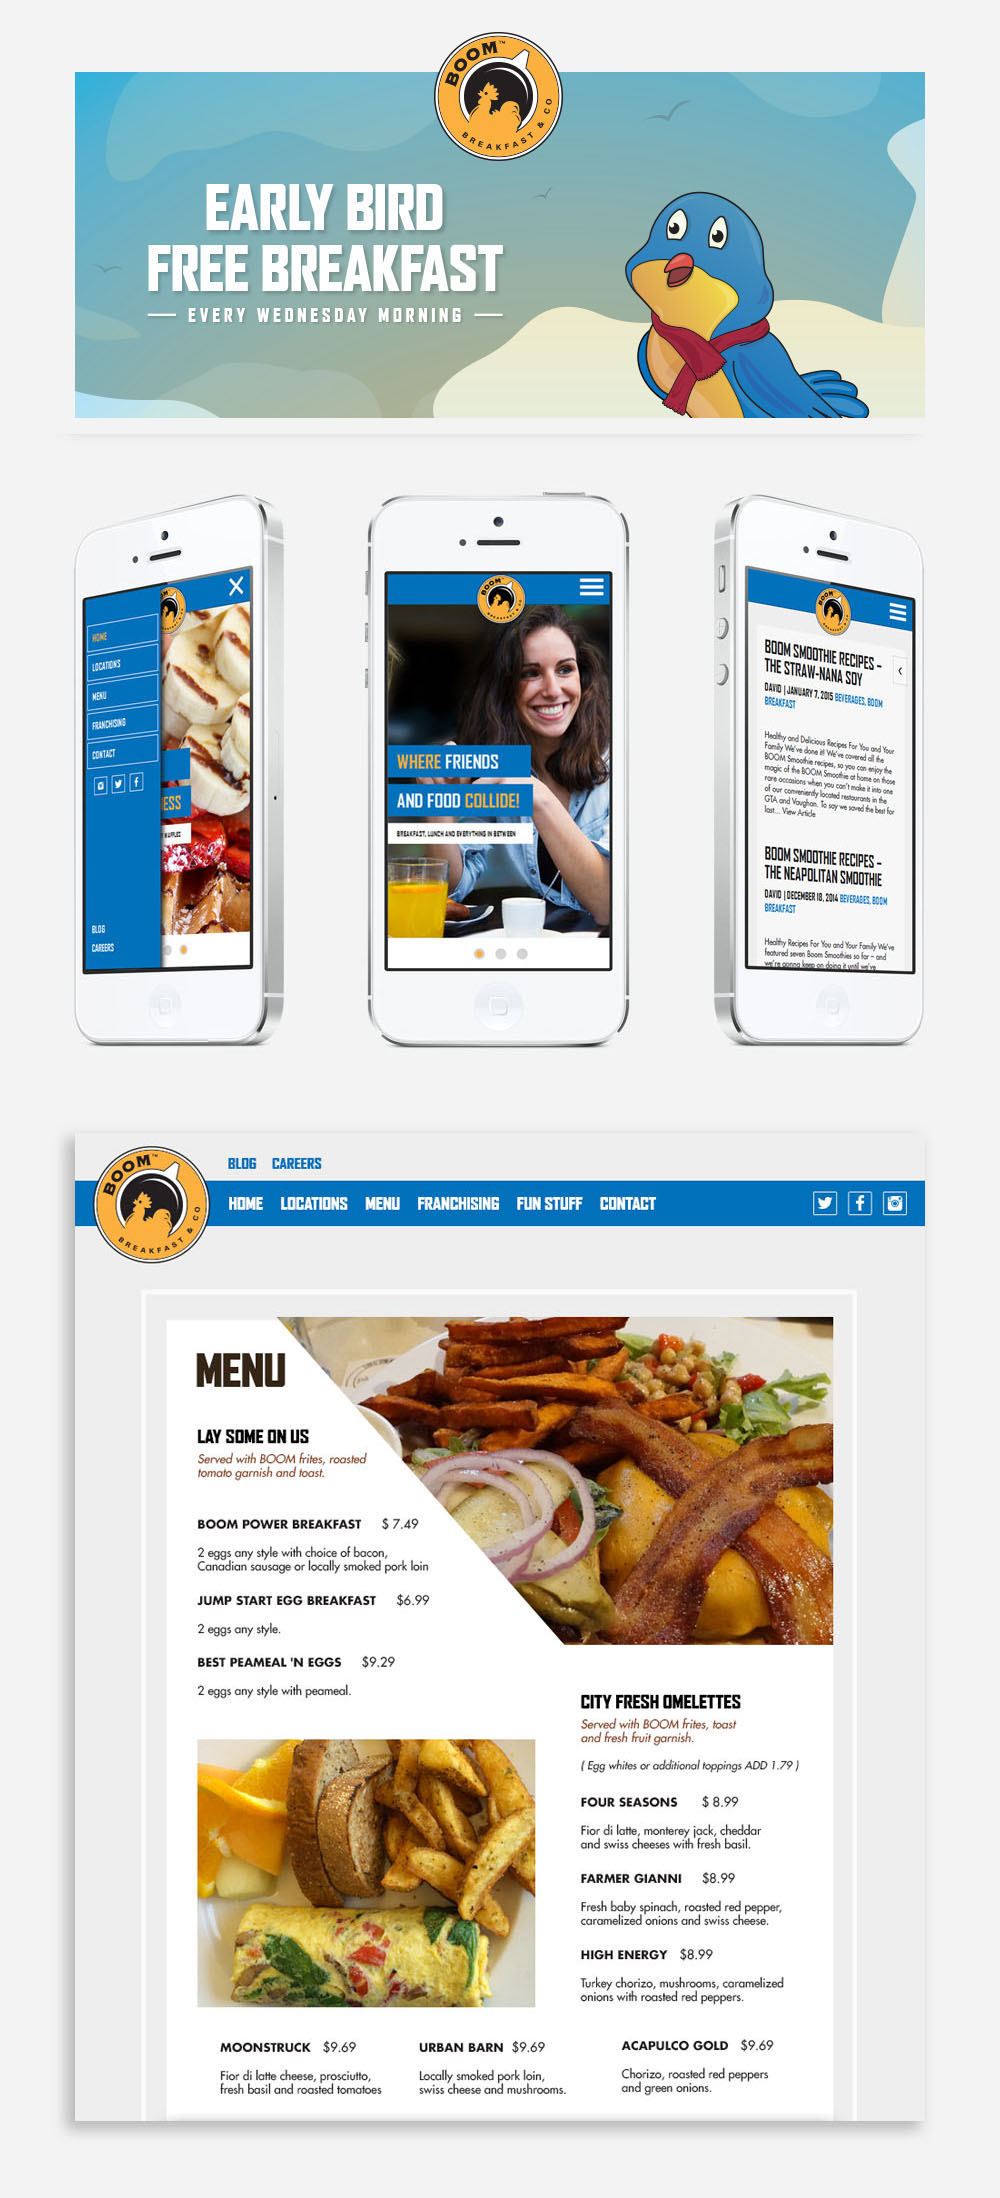 Boom Breakfast - Website Design and Development